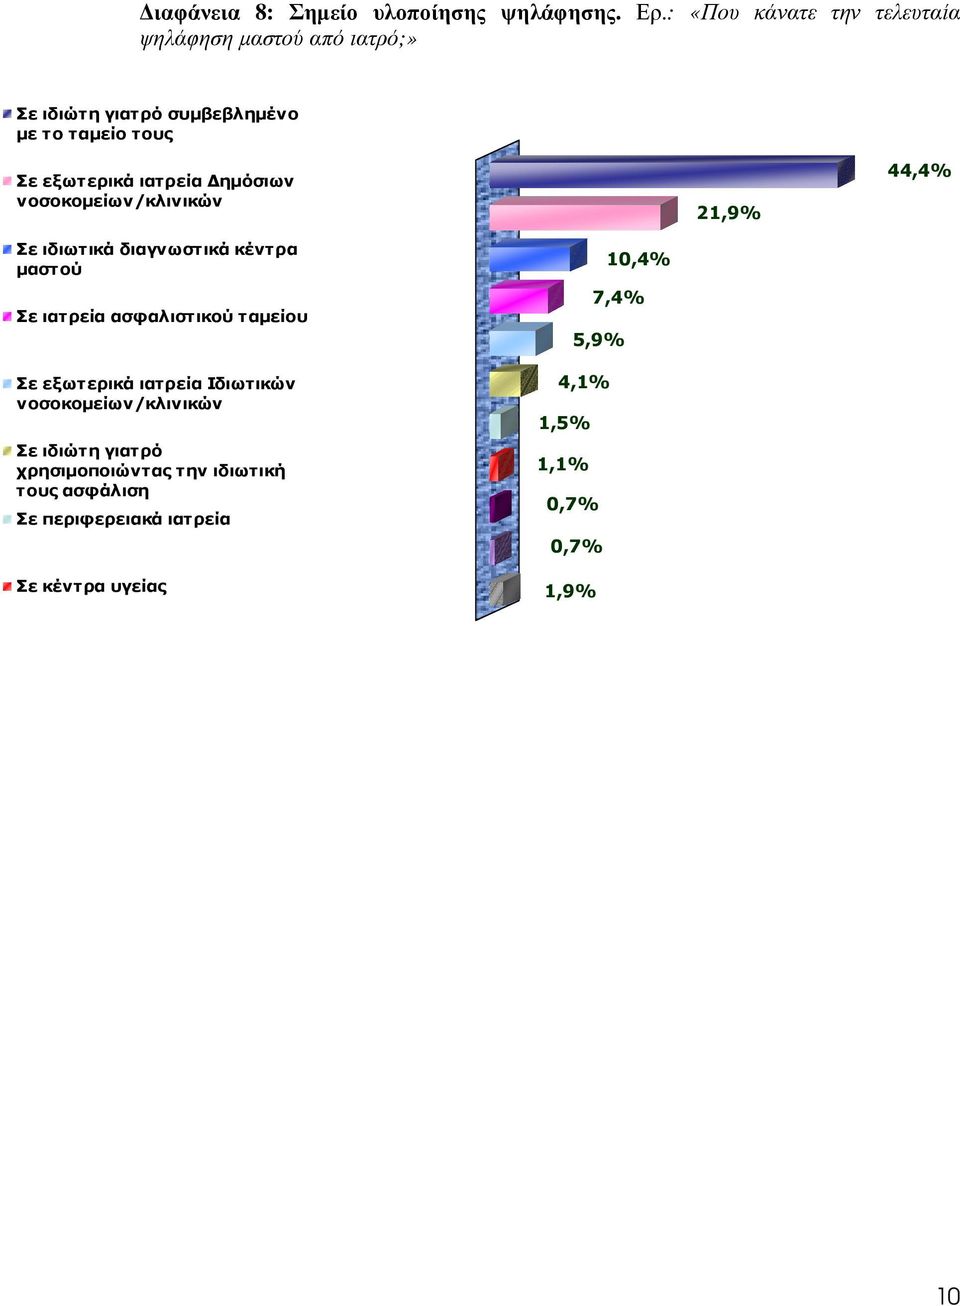 ιατρεία ηµόσιων νοσοκοµείων/κλινικών 21,9% 44,4% Σε ιδιωτικά διαγνωστικά κέντρα µαστού Σε ιατρεία ασφαλιστικού ταµείου